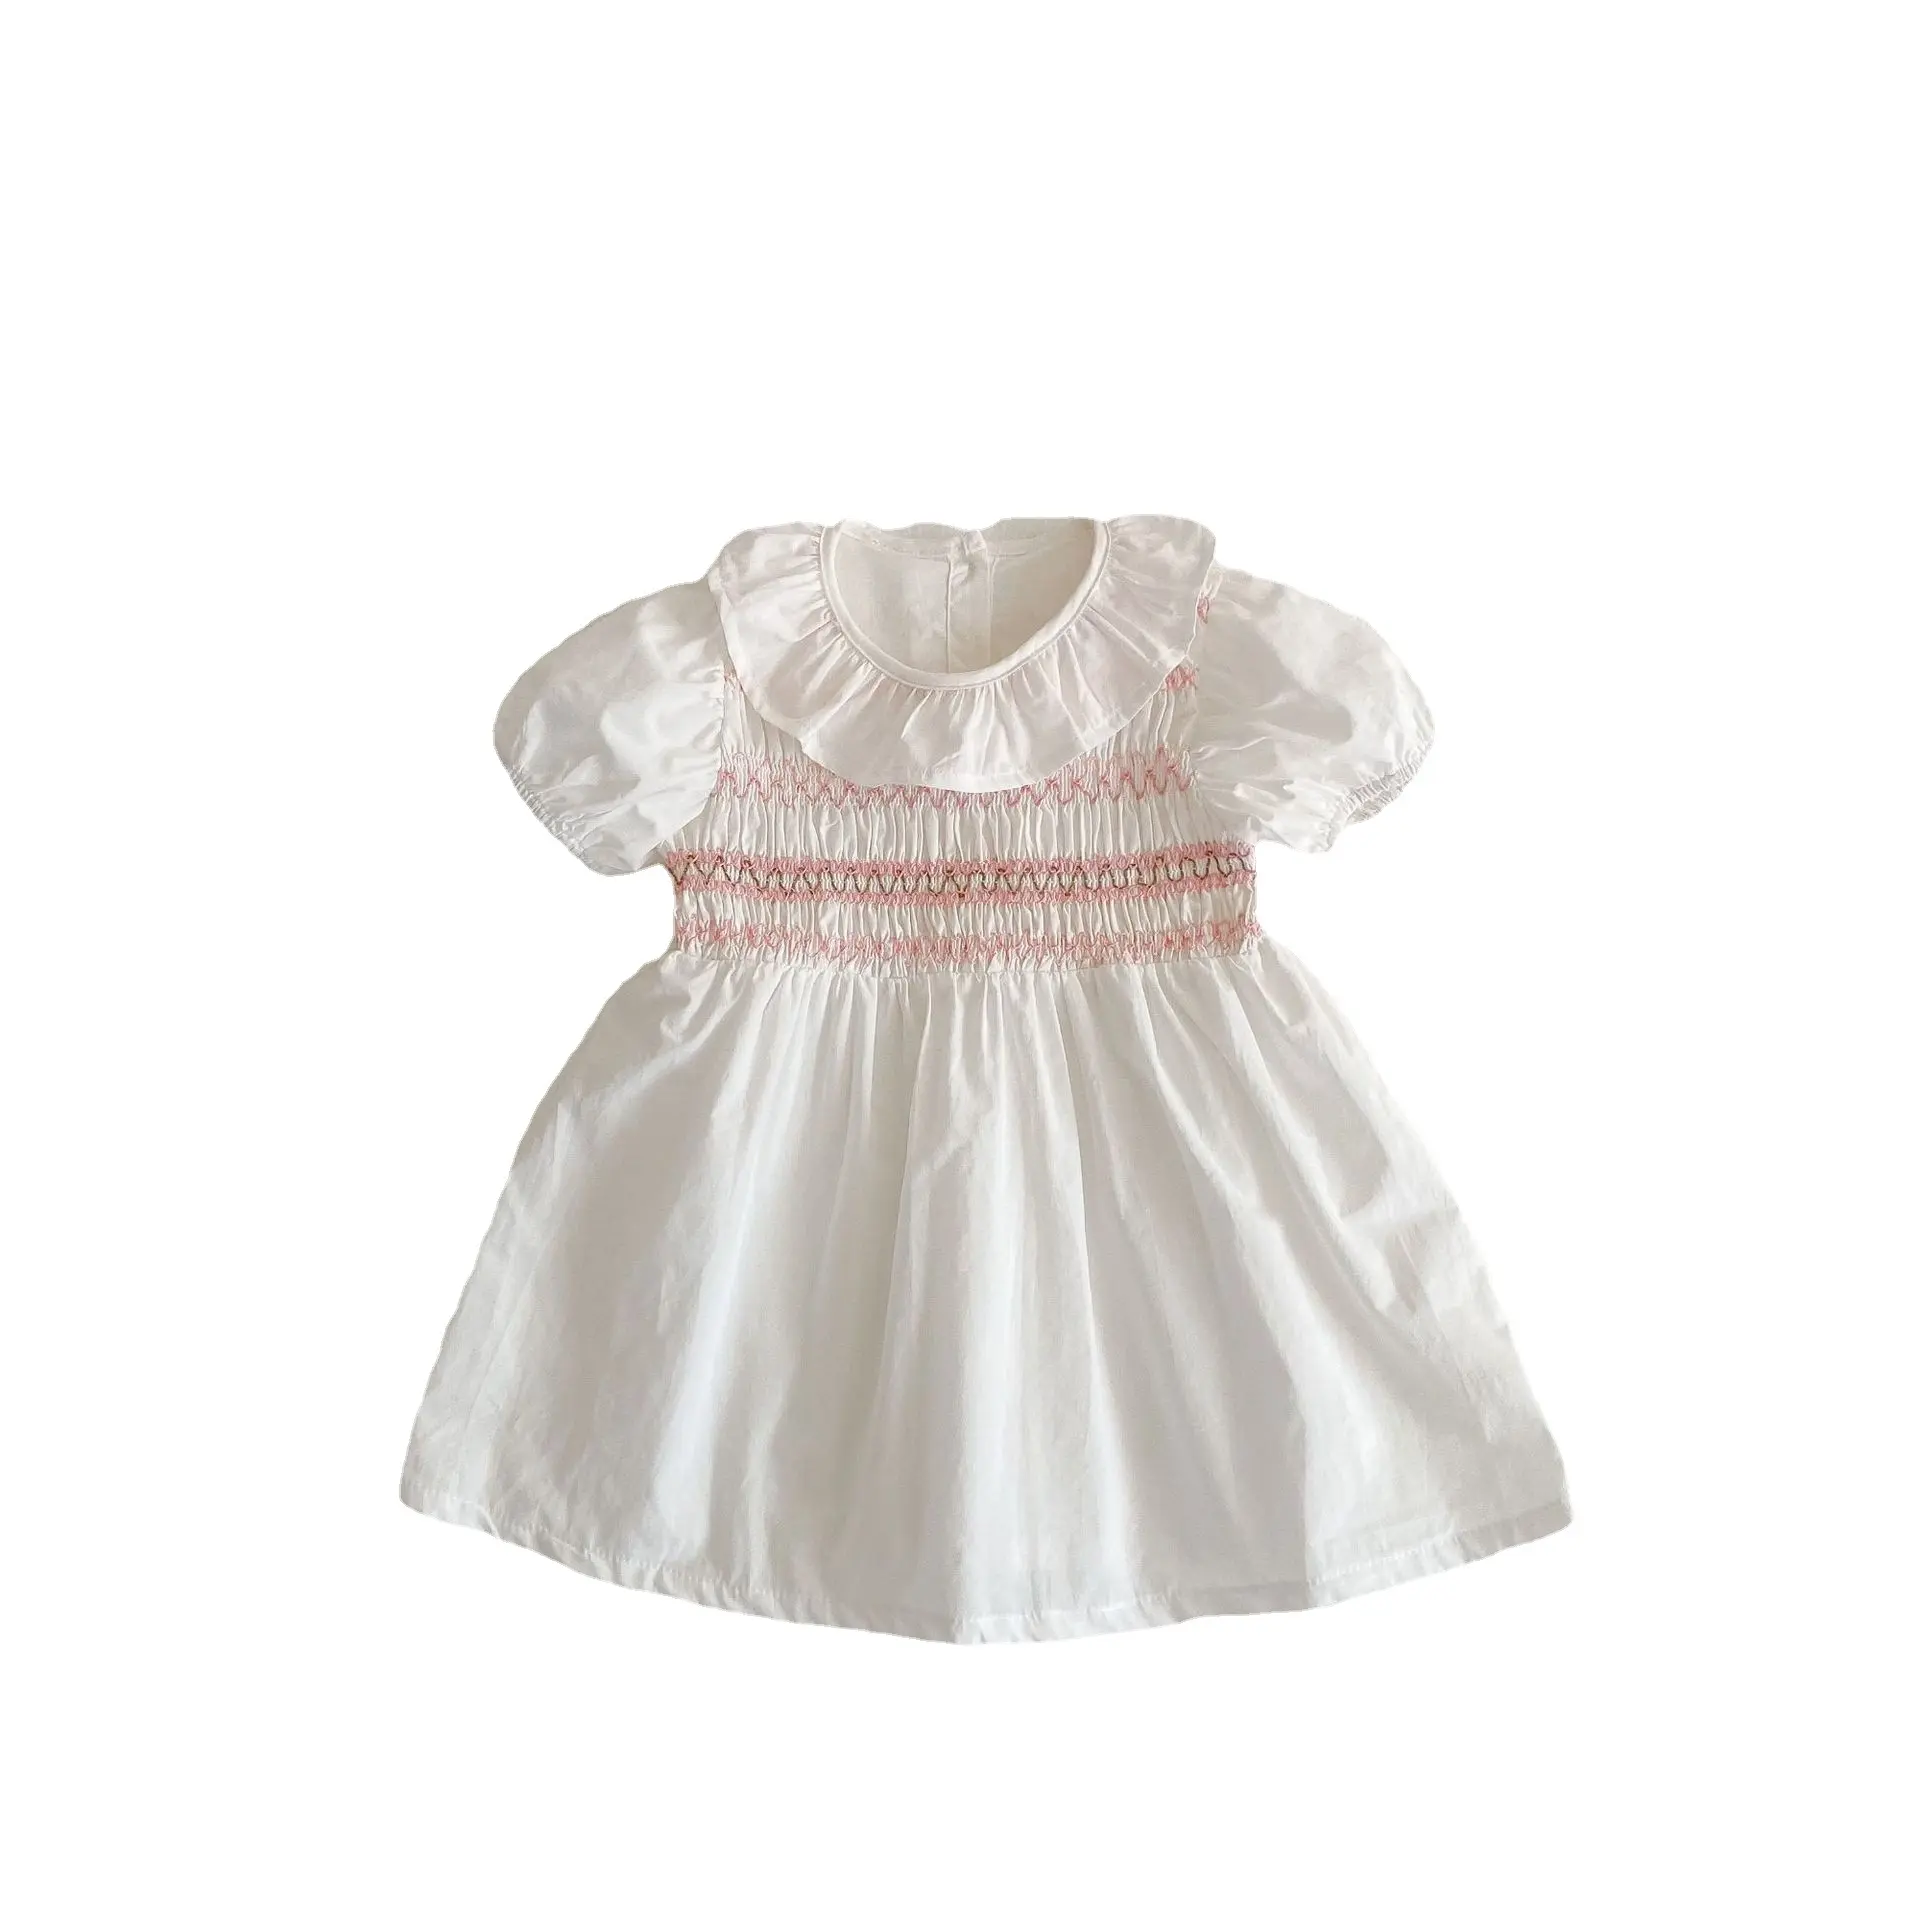 Vestidos Infantiles Personalizados para niñas, vestido personalizado para niñas pequeñas, vestido de algodón para niñas